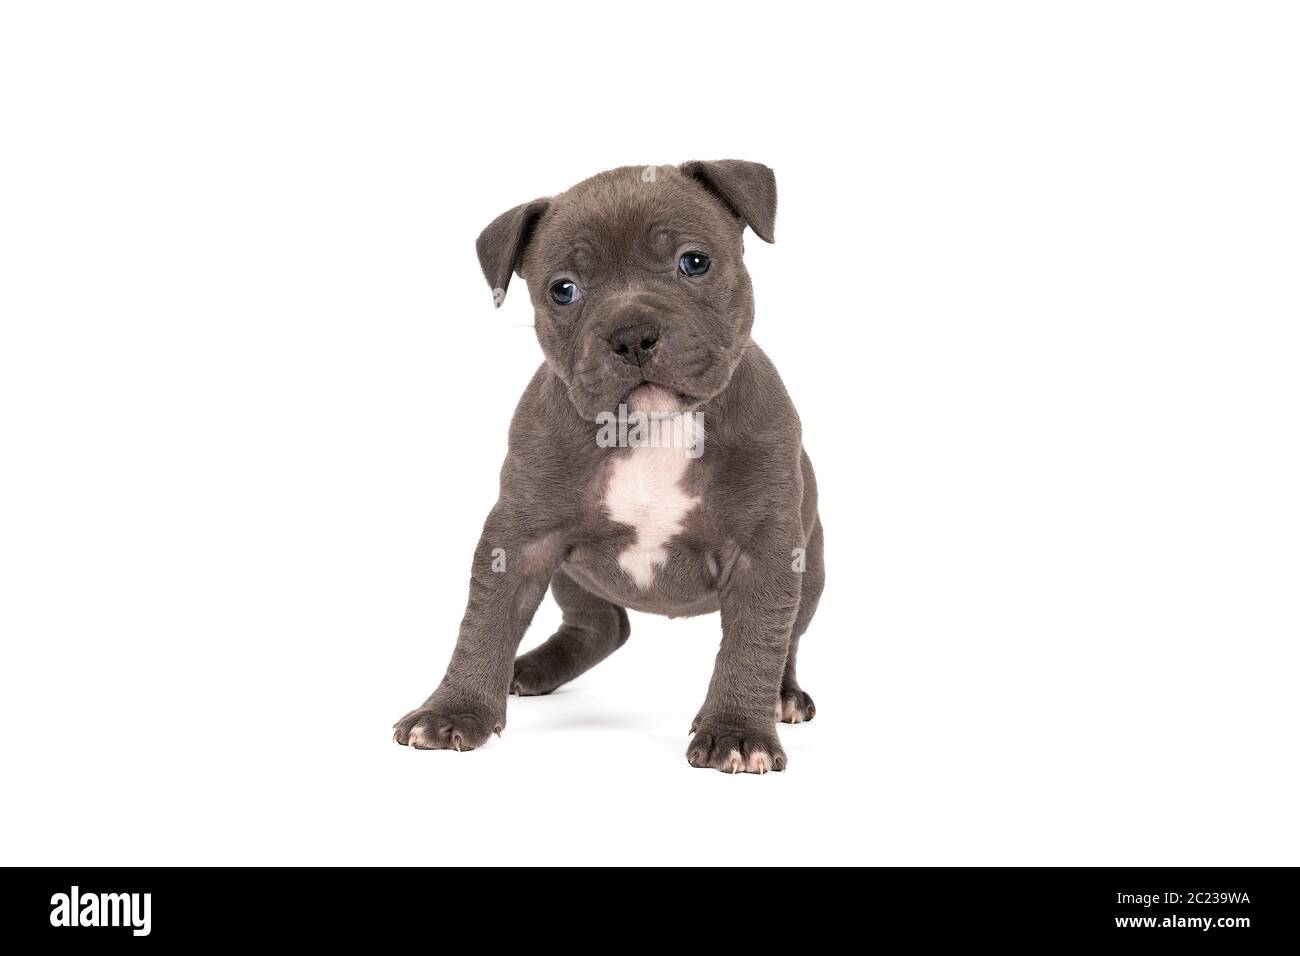 Un pup américain de Bully ou de Bulldog de race pure avec une fourrure bleue et blanche debout regardant la caméra isolée sur un fond blanc Banque D'Images